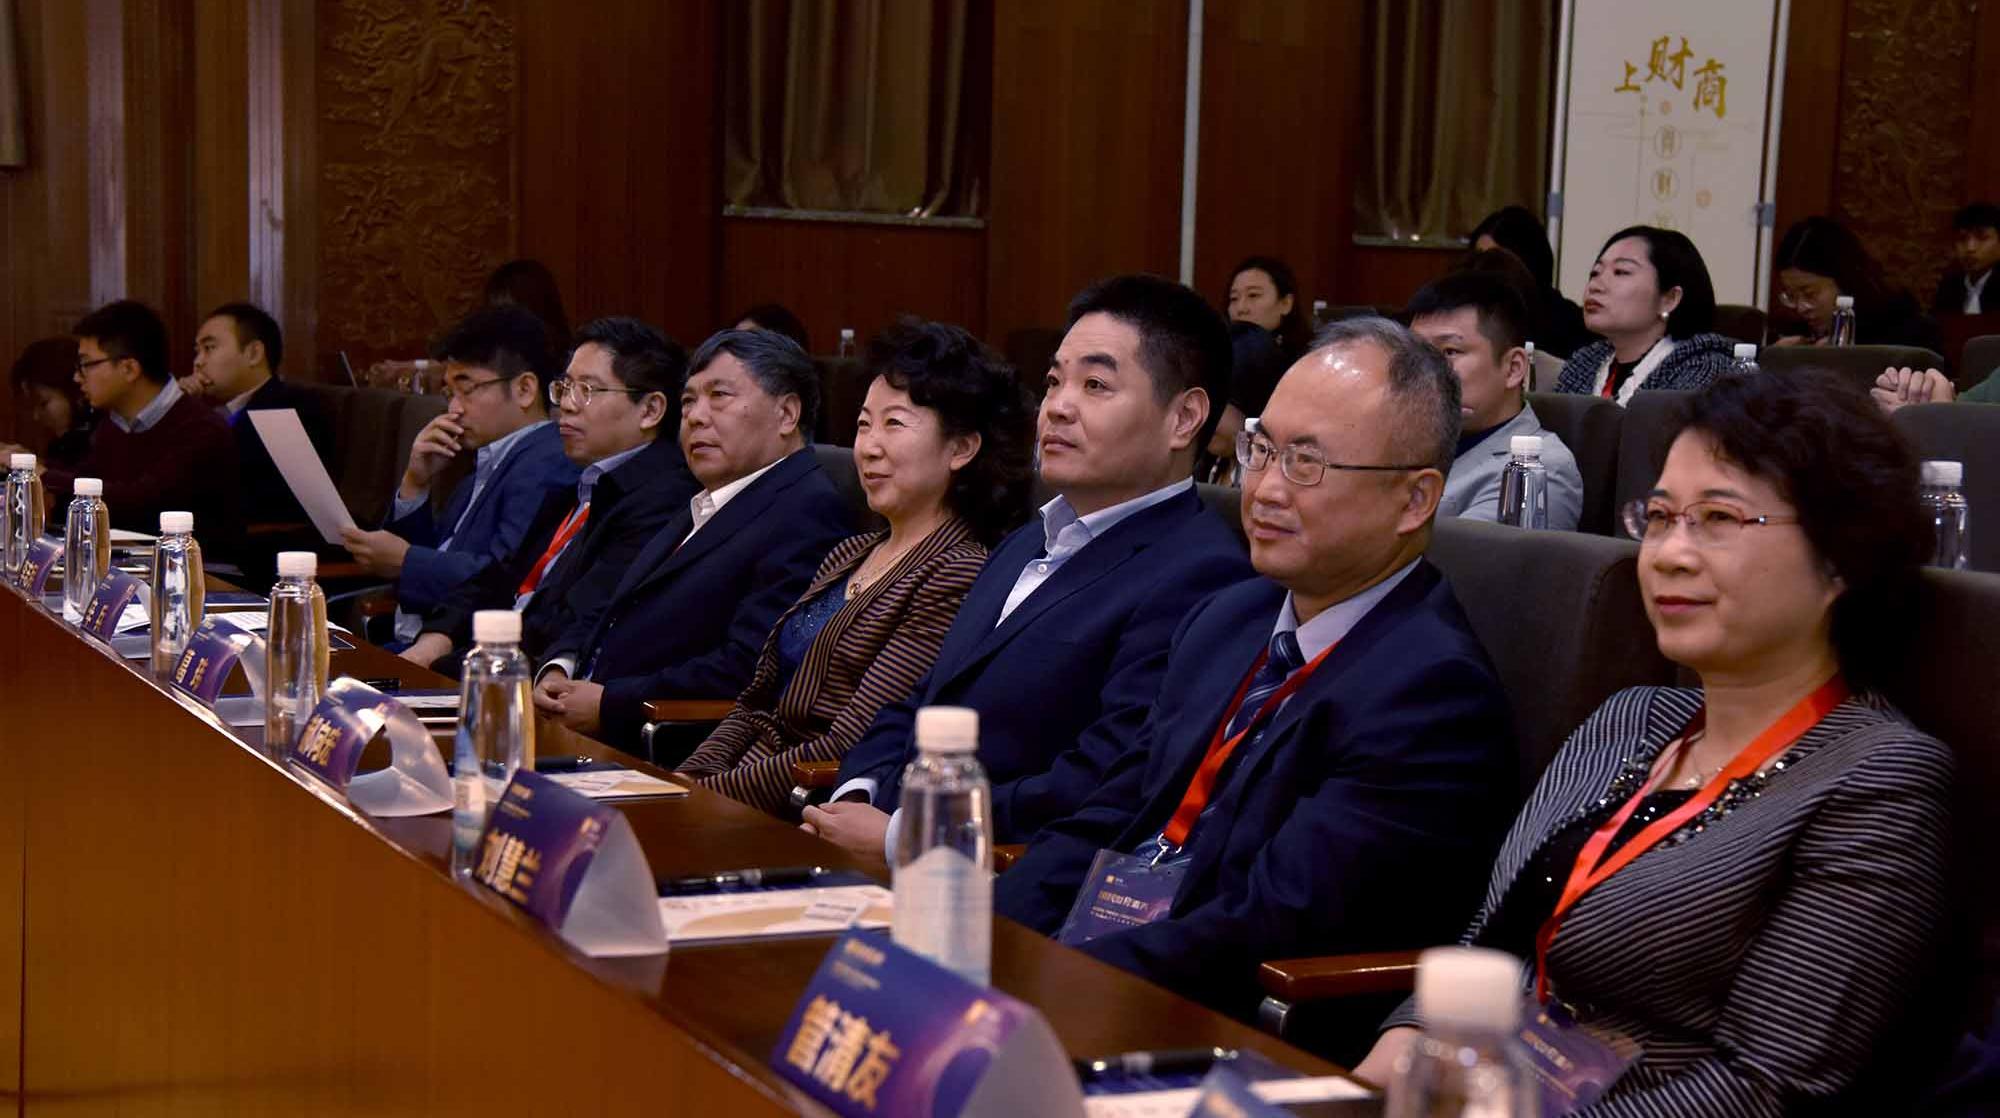 国民财经素养教育研讨会暨财商APP上线发布会在京举行